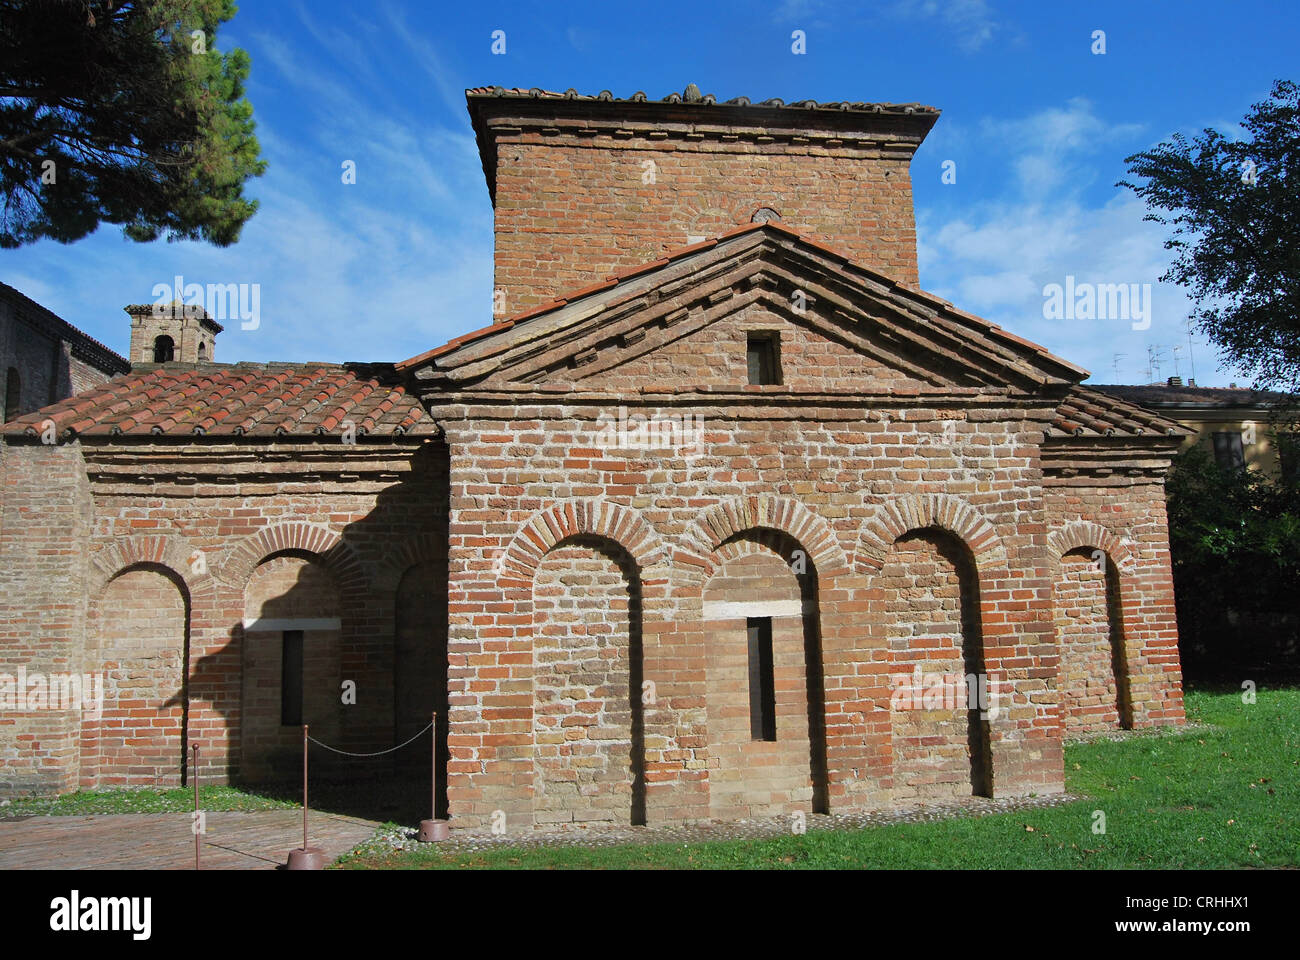 Mausoleo di Galla Placidia from Roman period in Ravenna city in Italy Stock Photo